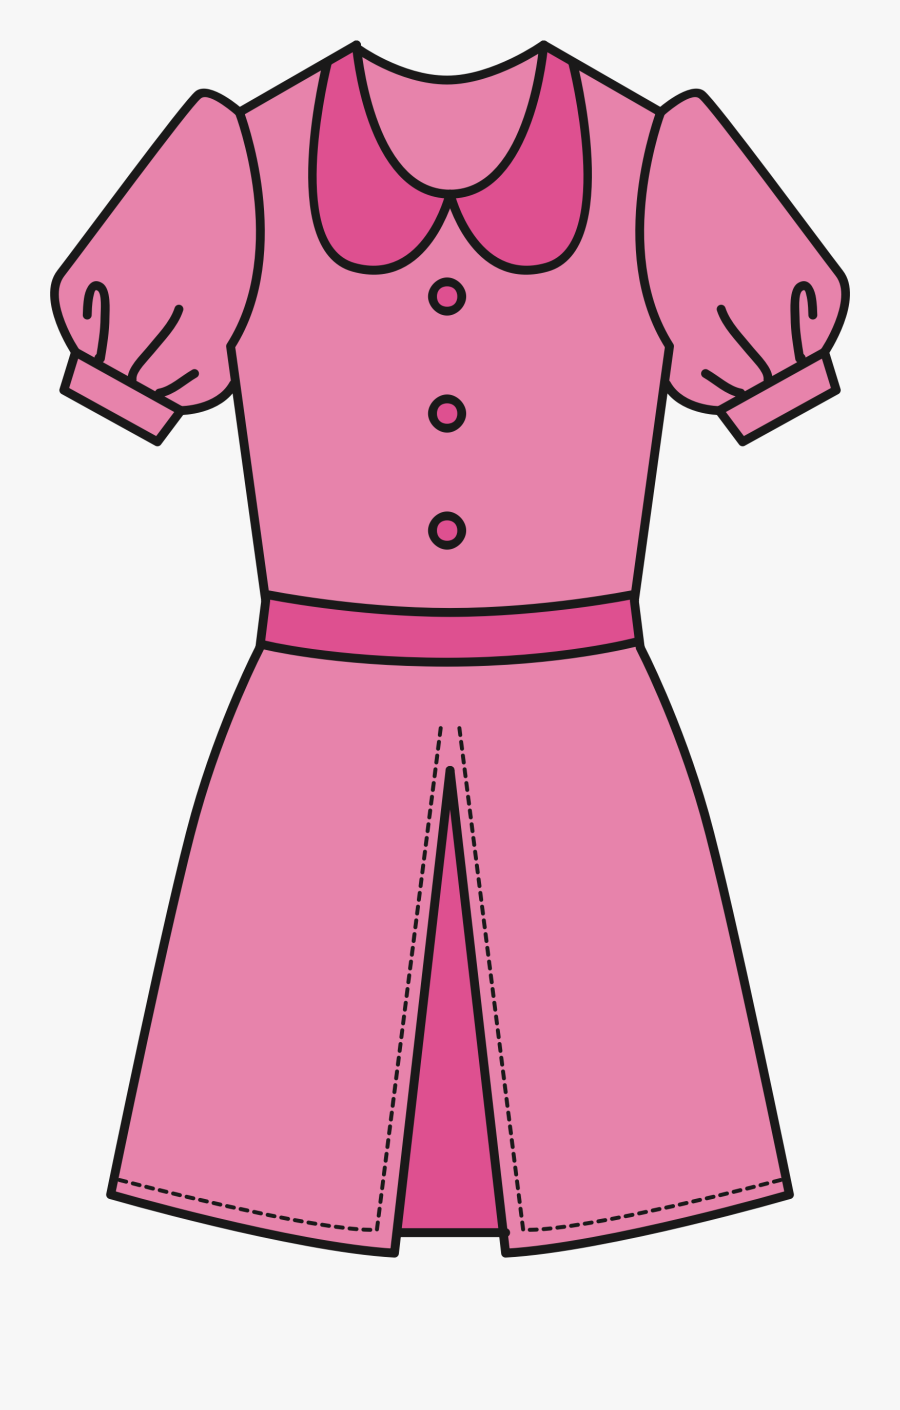 Dress Clipart Clipart Pink Dress - Clipart Of A Dress, Transparent Clipart